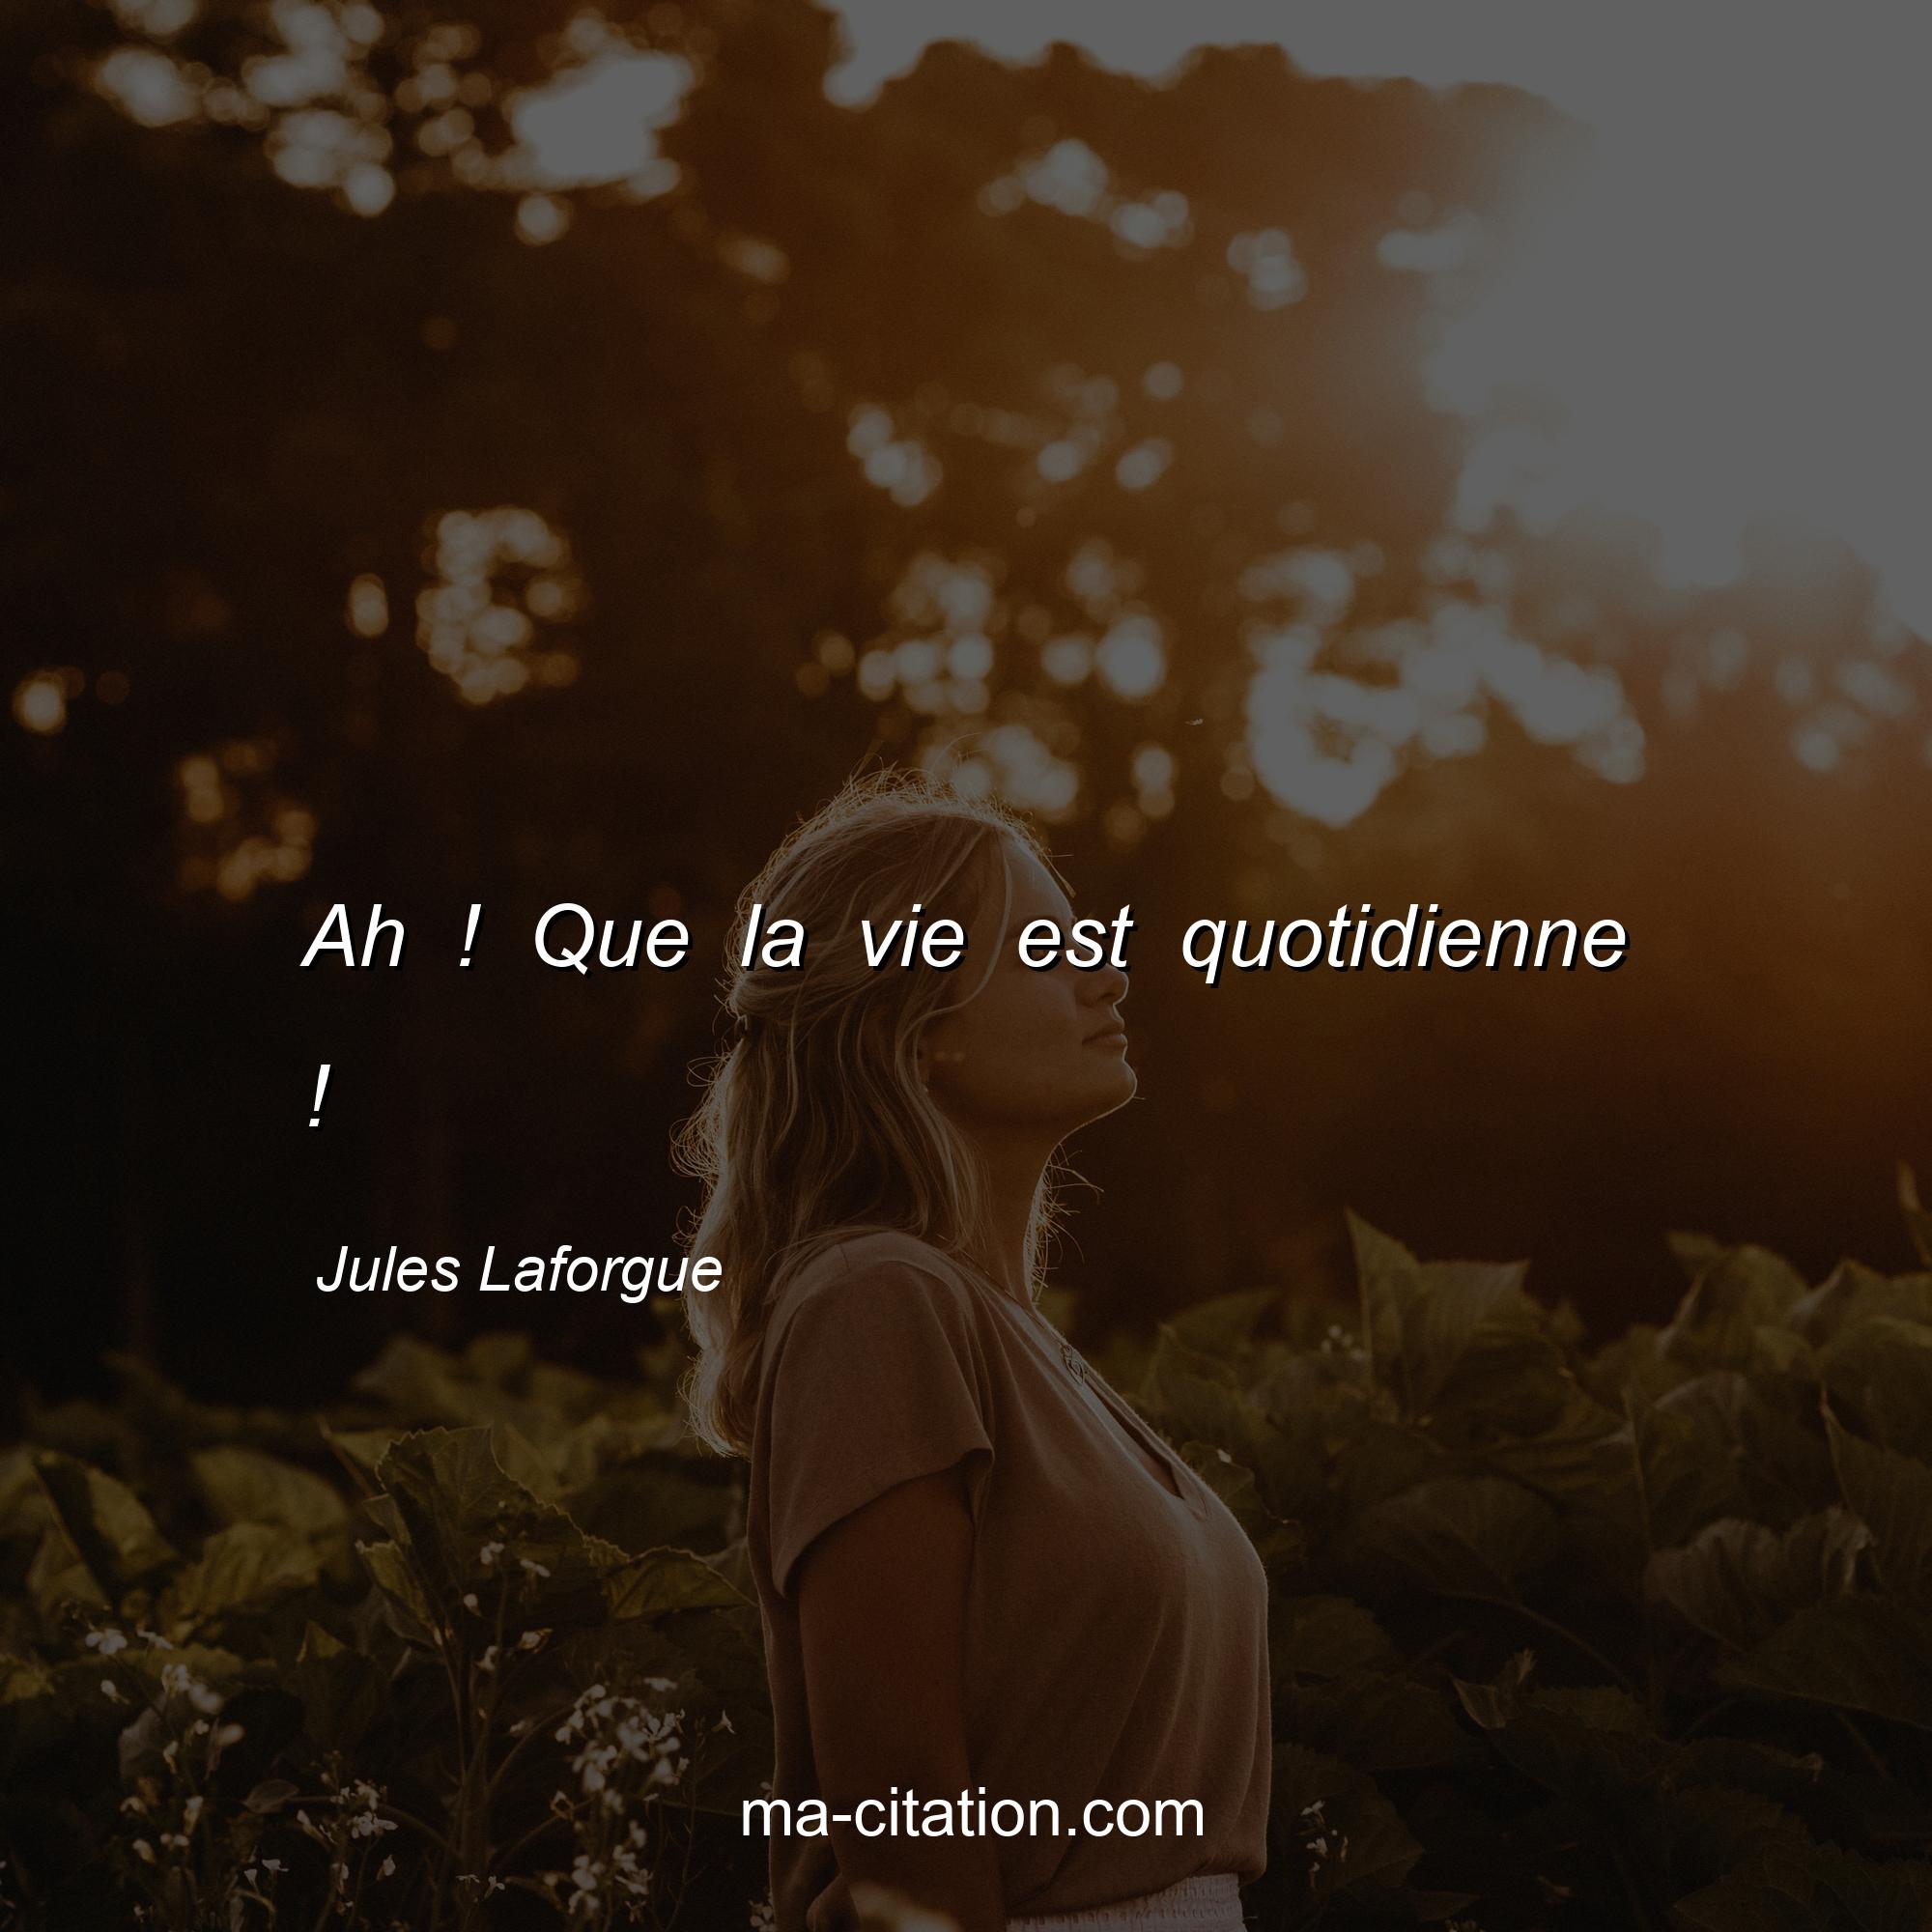 Jules Laforgue : Ah ! Que la vie est quotidienne !